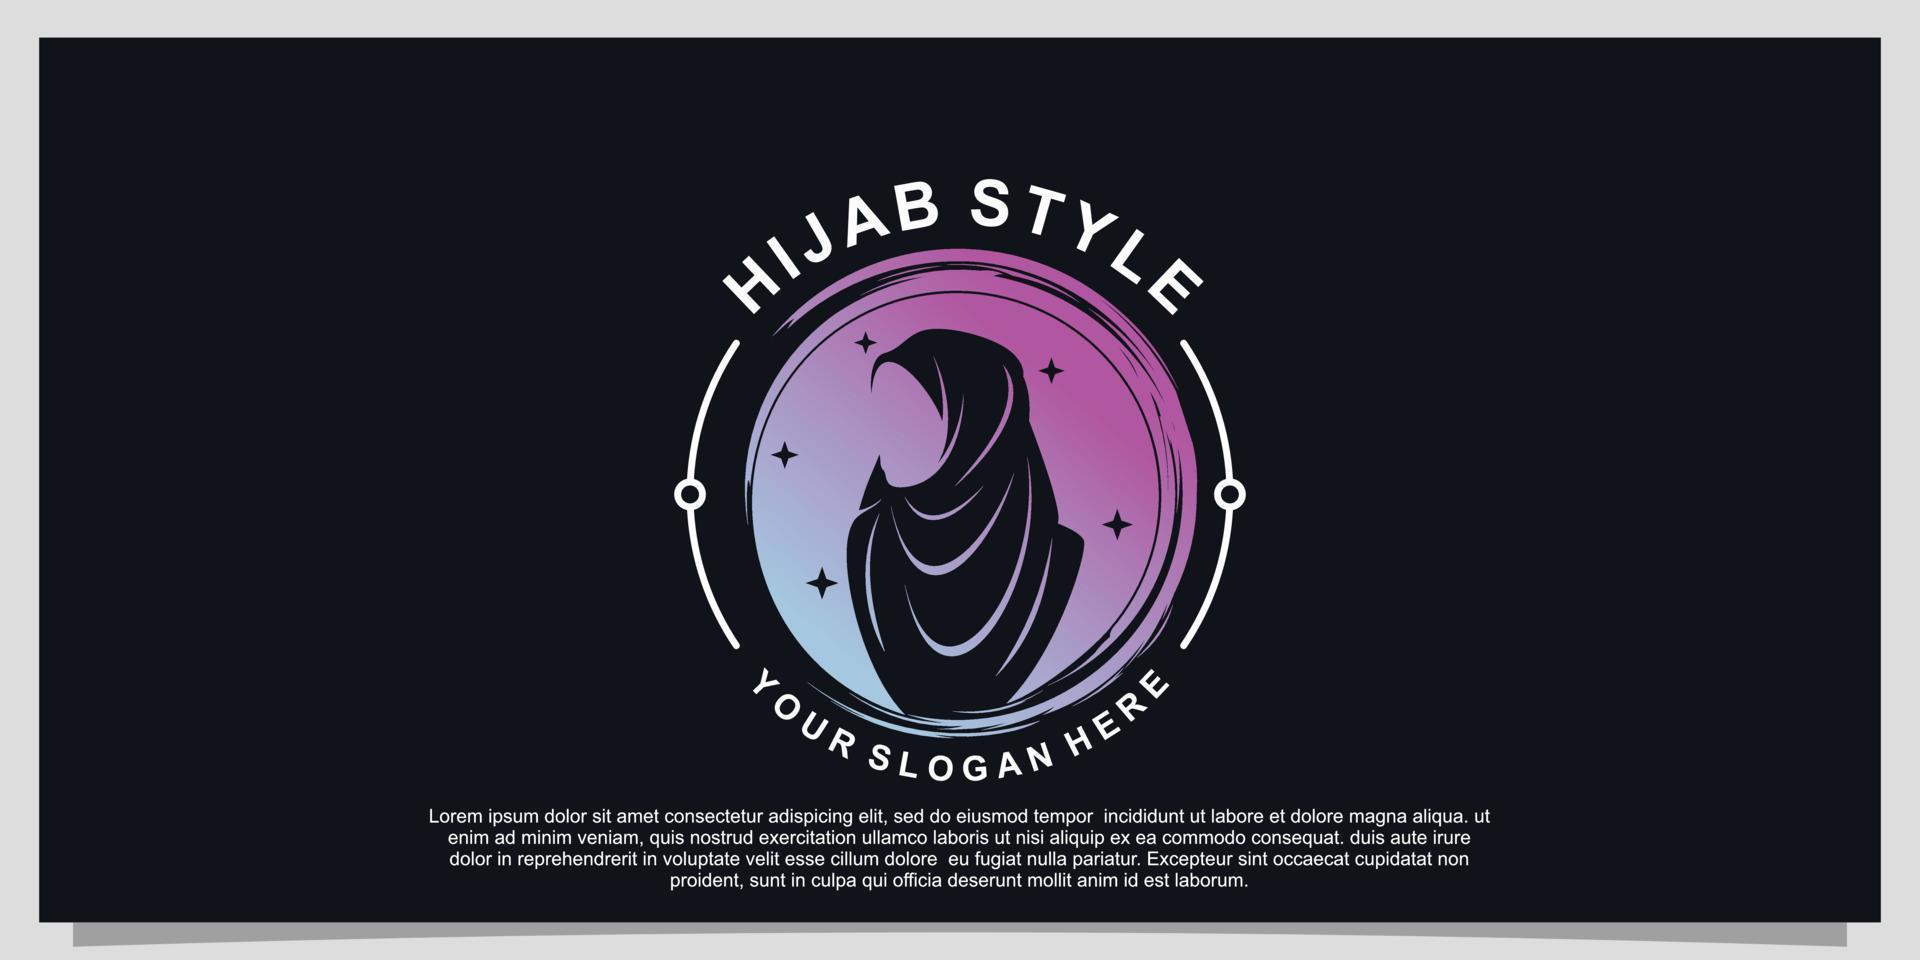 Logo-Design im Hijab-Stil für Hijab- oder Schalmode-Muslimah mit einzigartigem Konzept Premium-Vektorteil 12 vektor